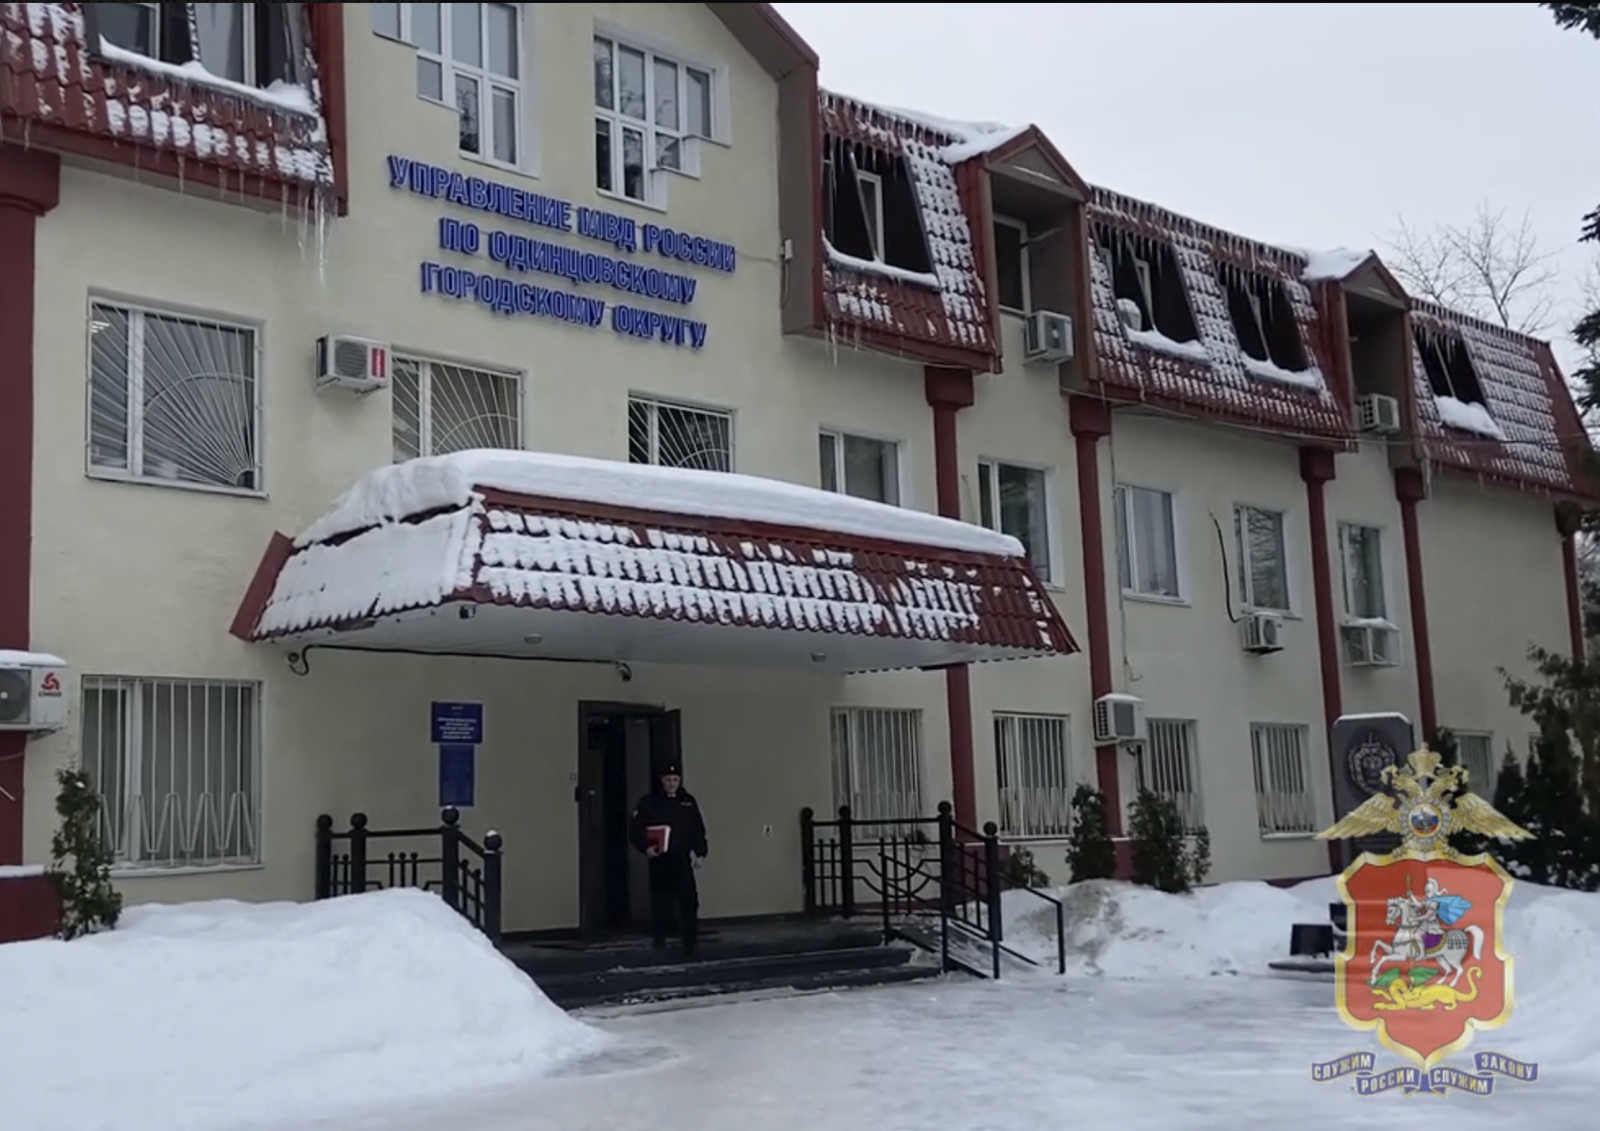 В Одинцово обокравших пенсионерку лжесоцработниц сняли камеры системы «Безопасный регион»